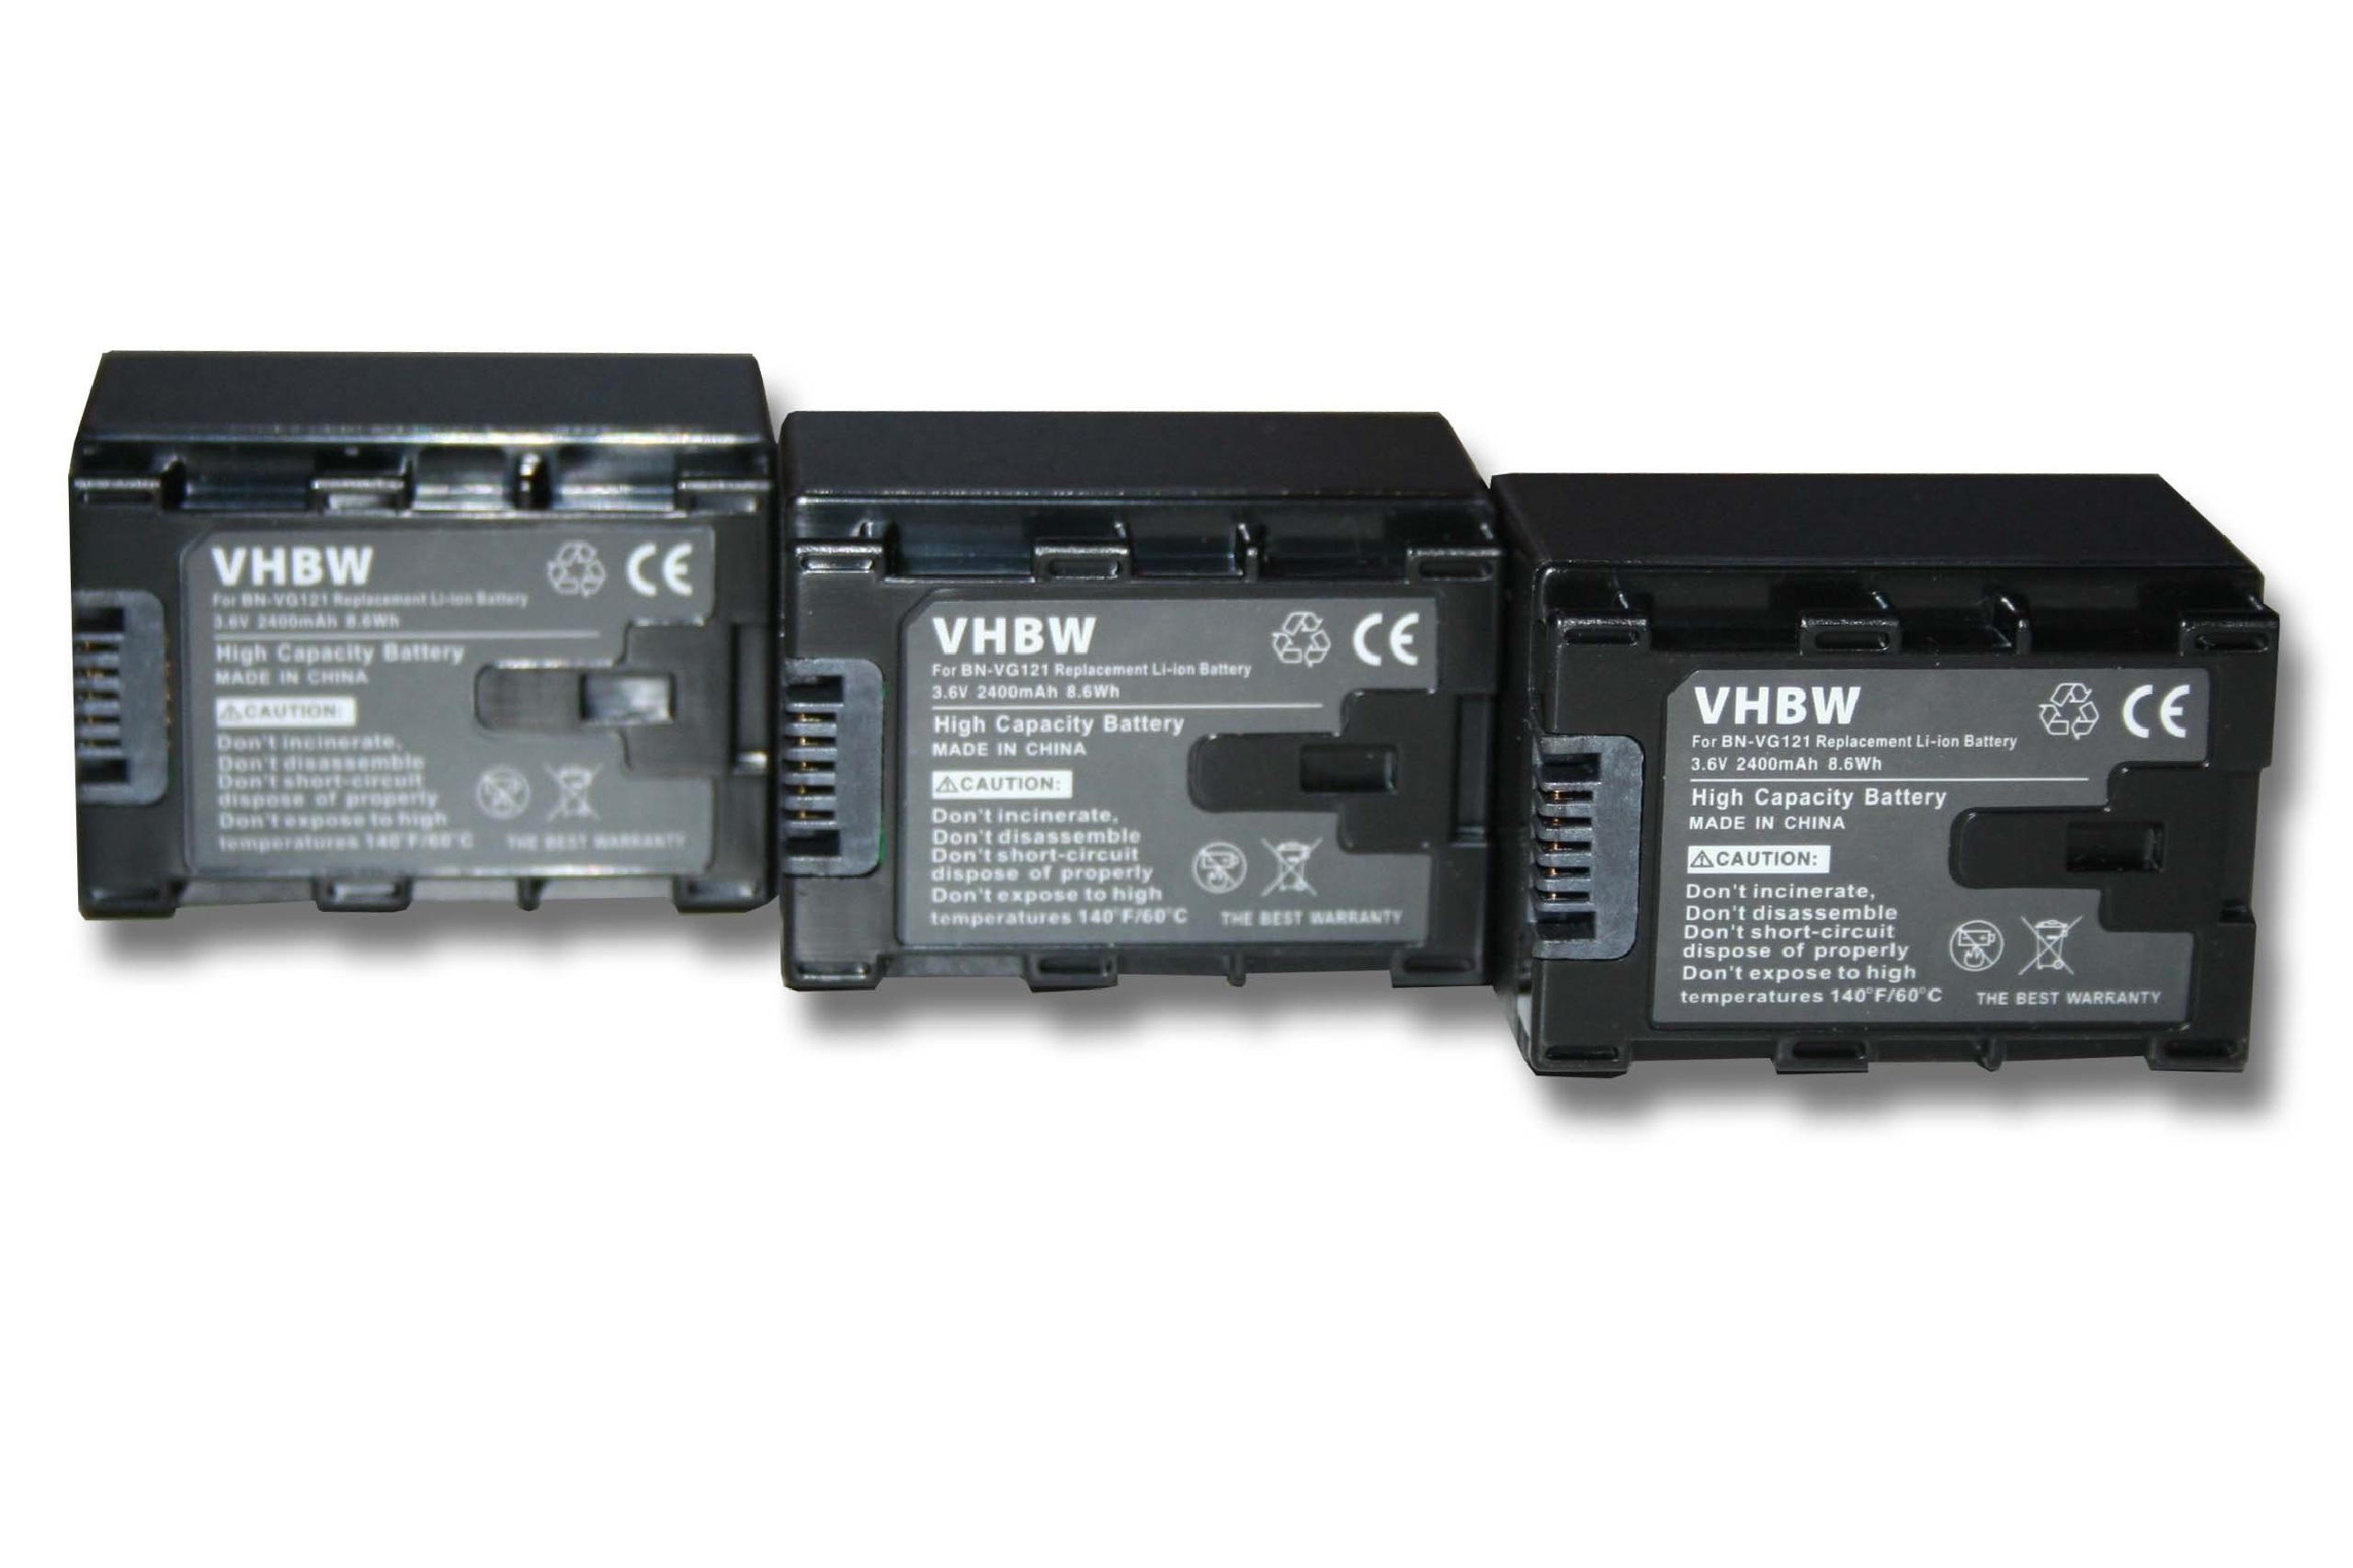 VHBW kompatibel mit GZ-HM880, GZ-HM960, GZ-HM890, Videokamera, 3.6 GZ-HM980 GZ-HM970, JVC 2400 GZ-HM870, Akku - Volt, Li-Ion